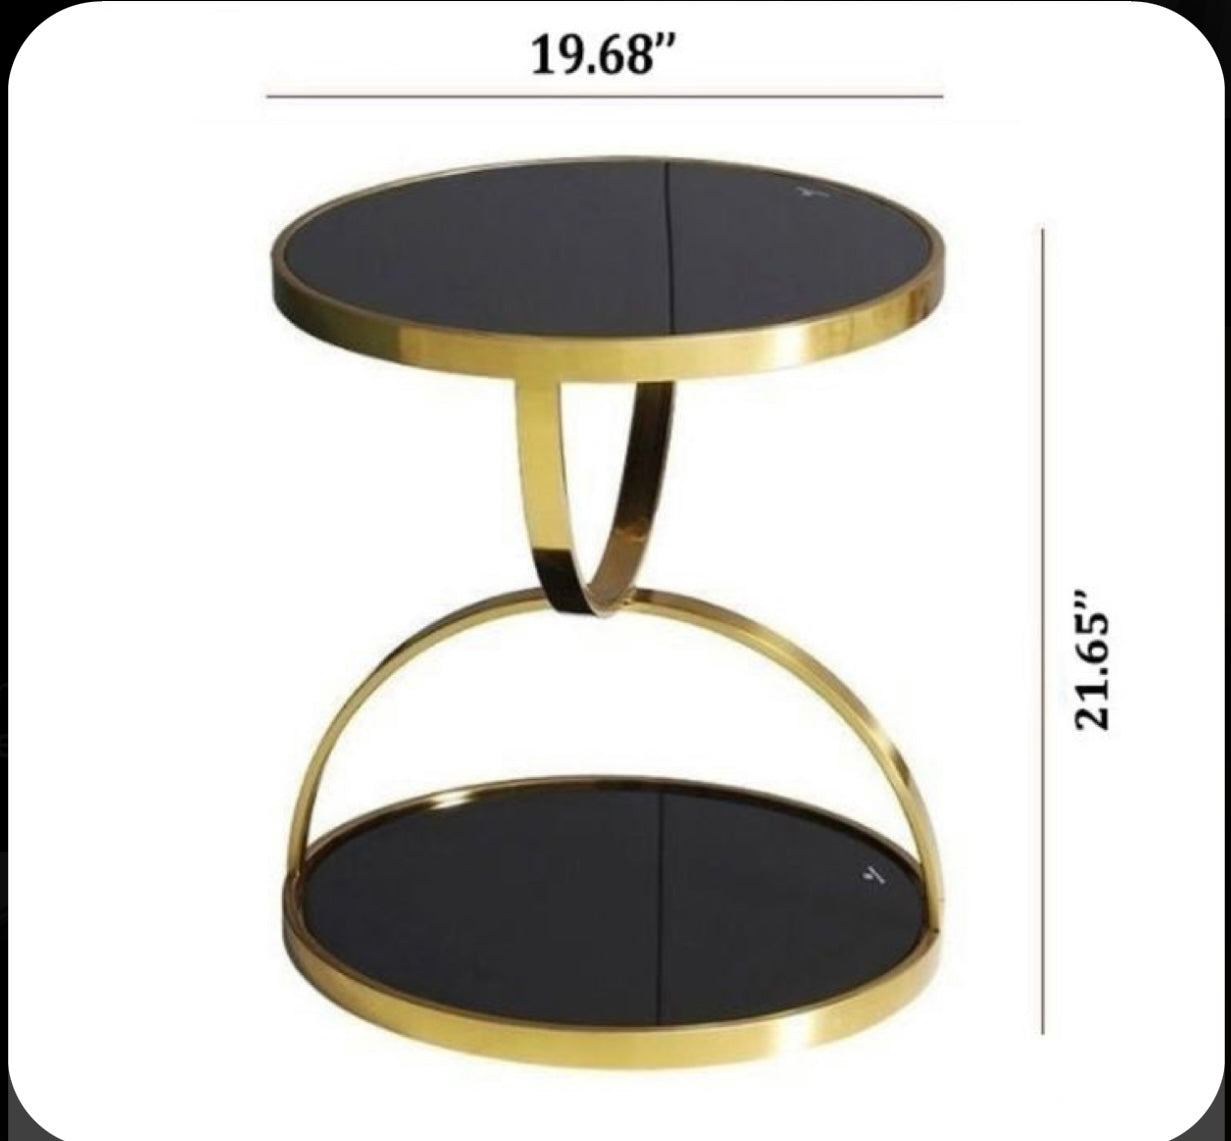 Luxury stool